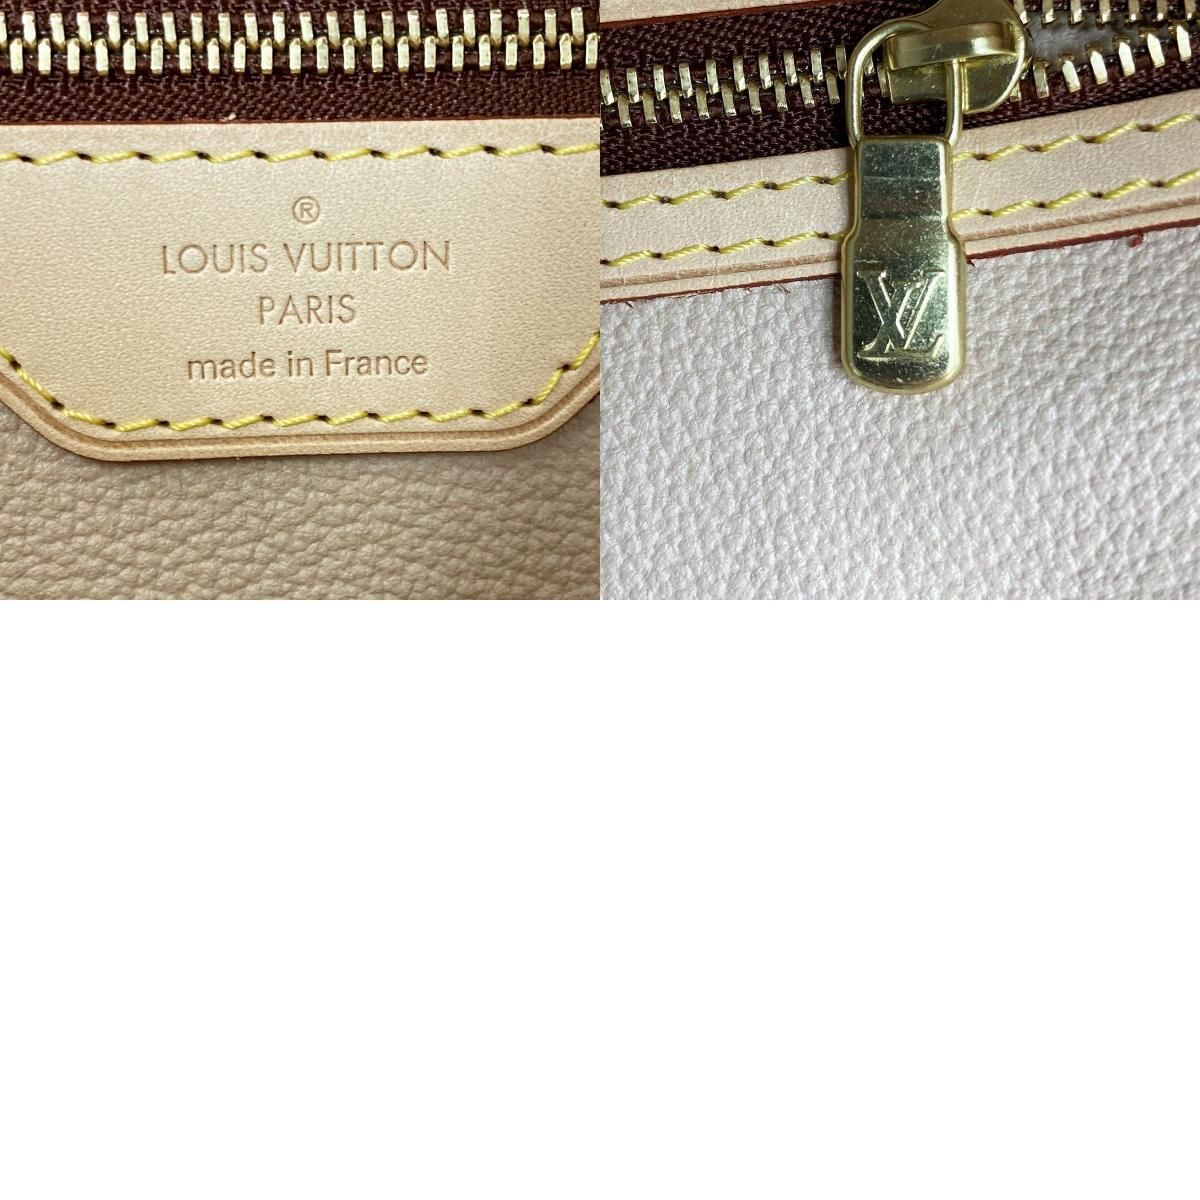 LOUIS VUITTON ルイ・ヴィトン バケットGM ベタ無し モノグラム ショルダーバッグ バケツバッグ バッグ ブラウン PVC レディース メンズ ユニセックス ファッション M42236 USED